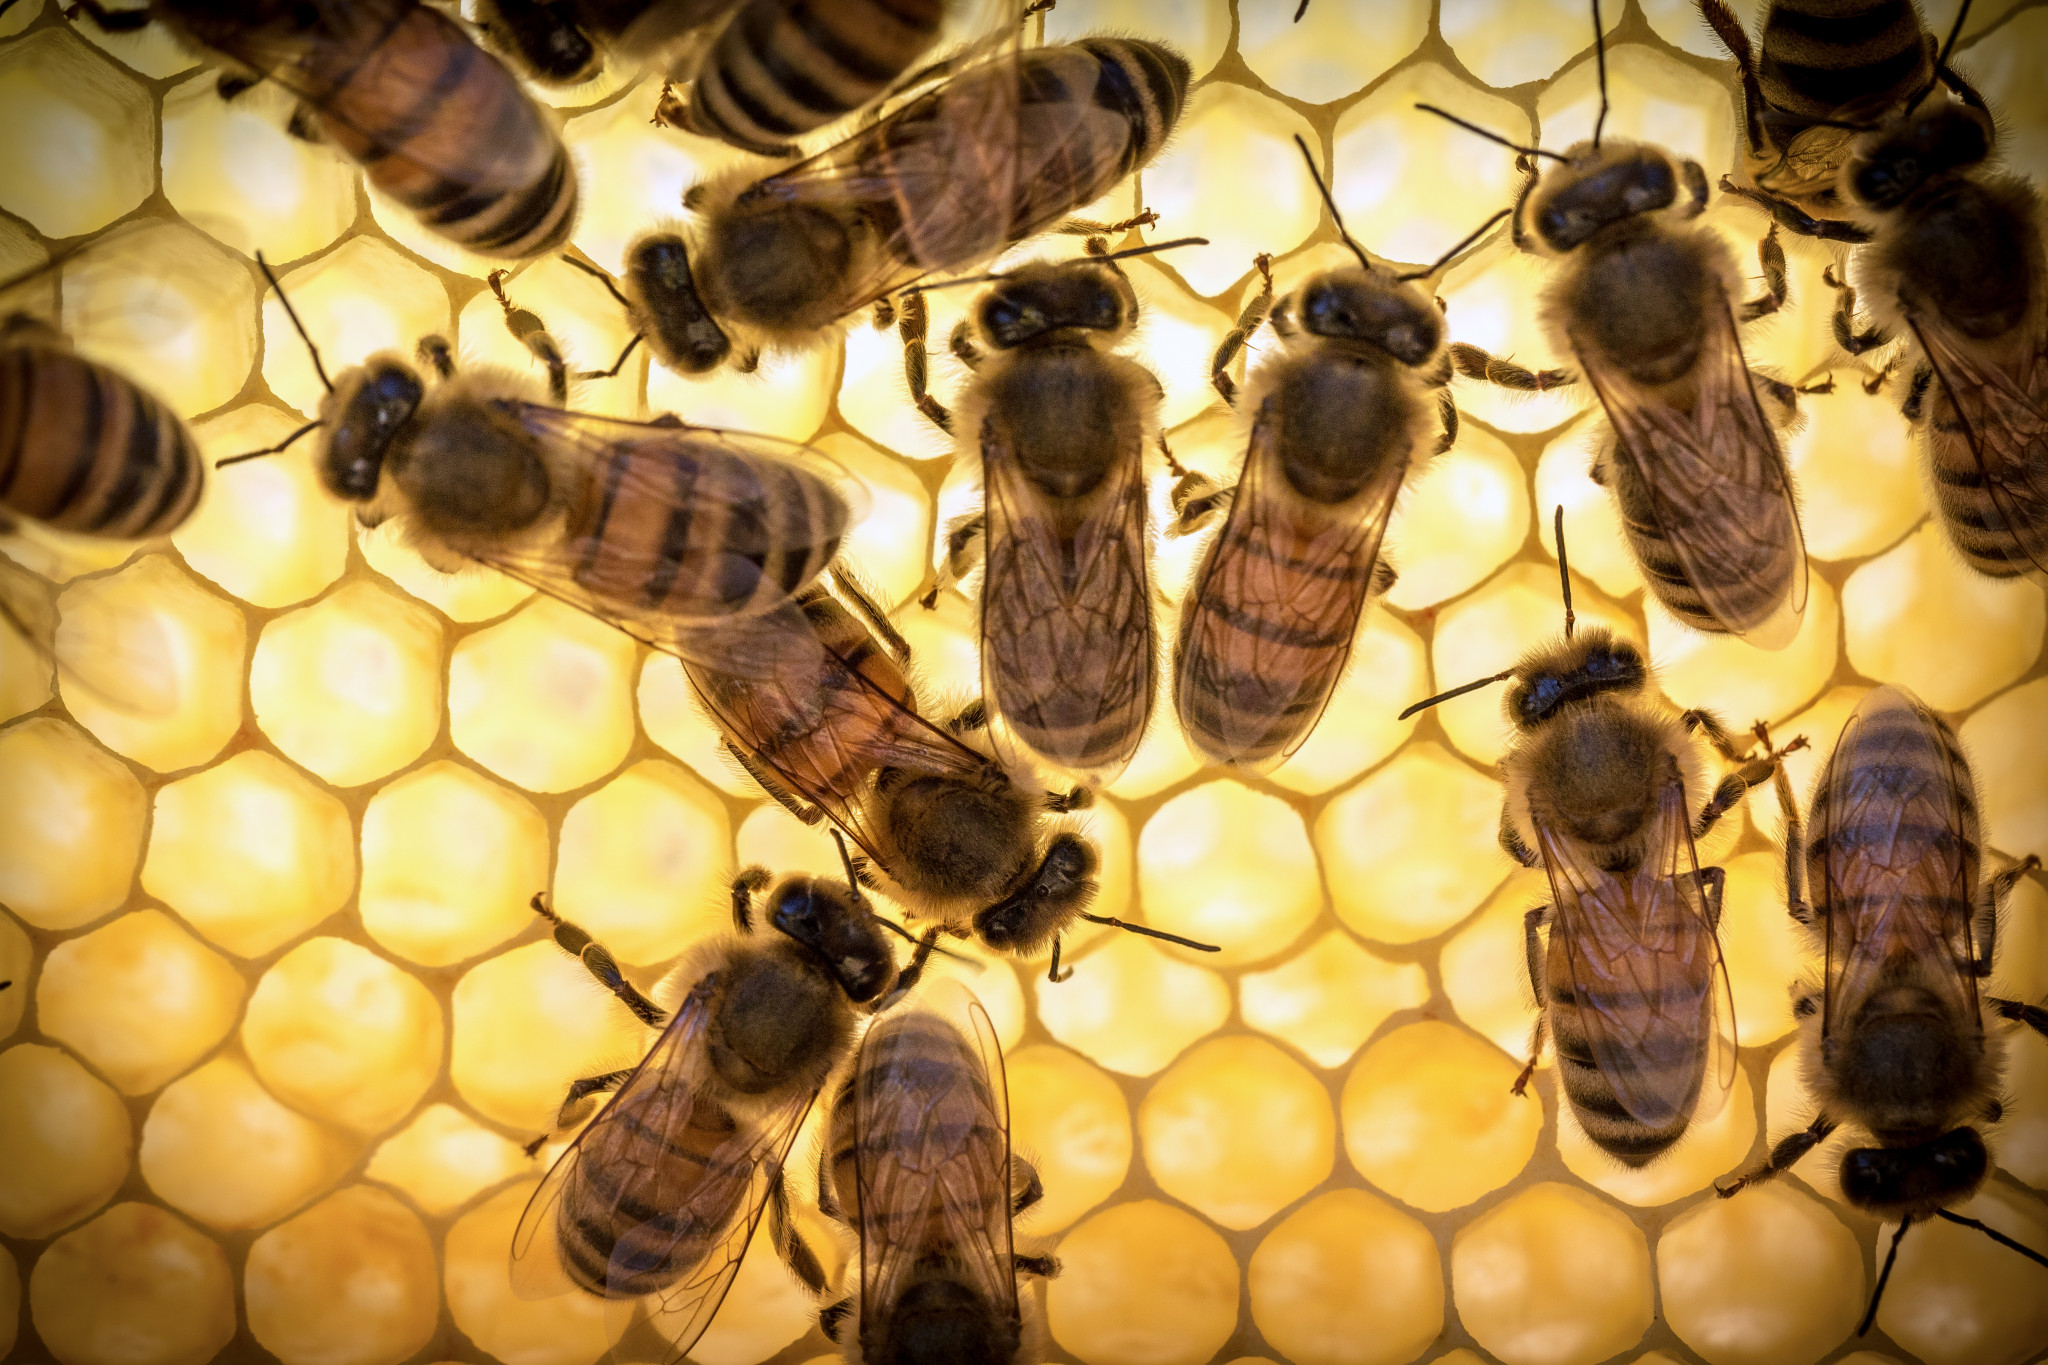 Pčelinja matična mliječ se ne preporuča koristiti noću, jer pod njezinim utjecajem povećava živčanu aktivnost i moguću nesanicu